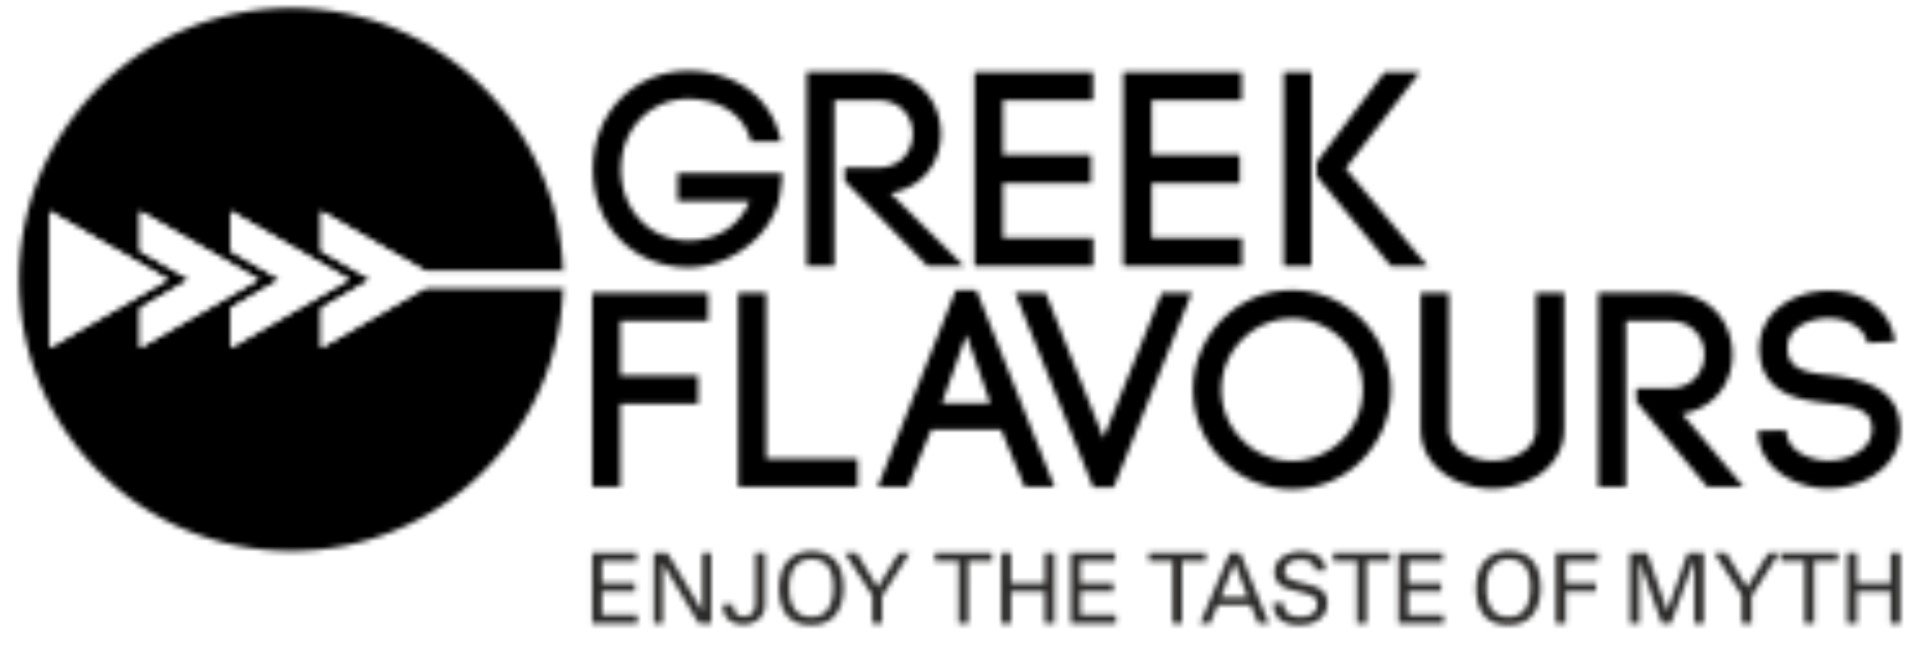 Greek Flavours IT logo